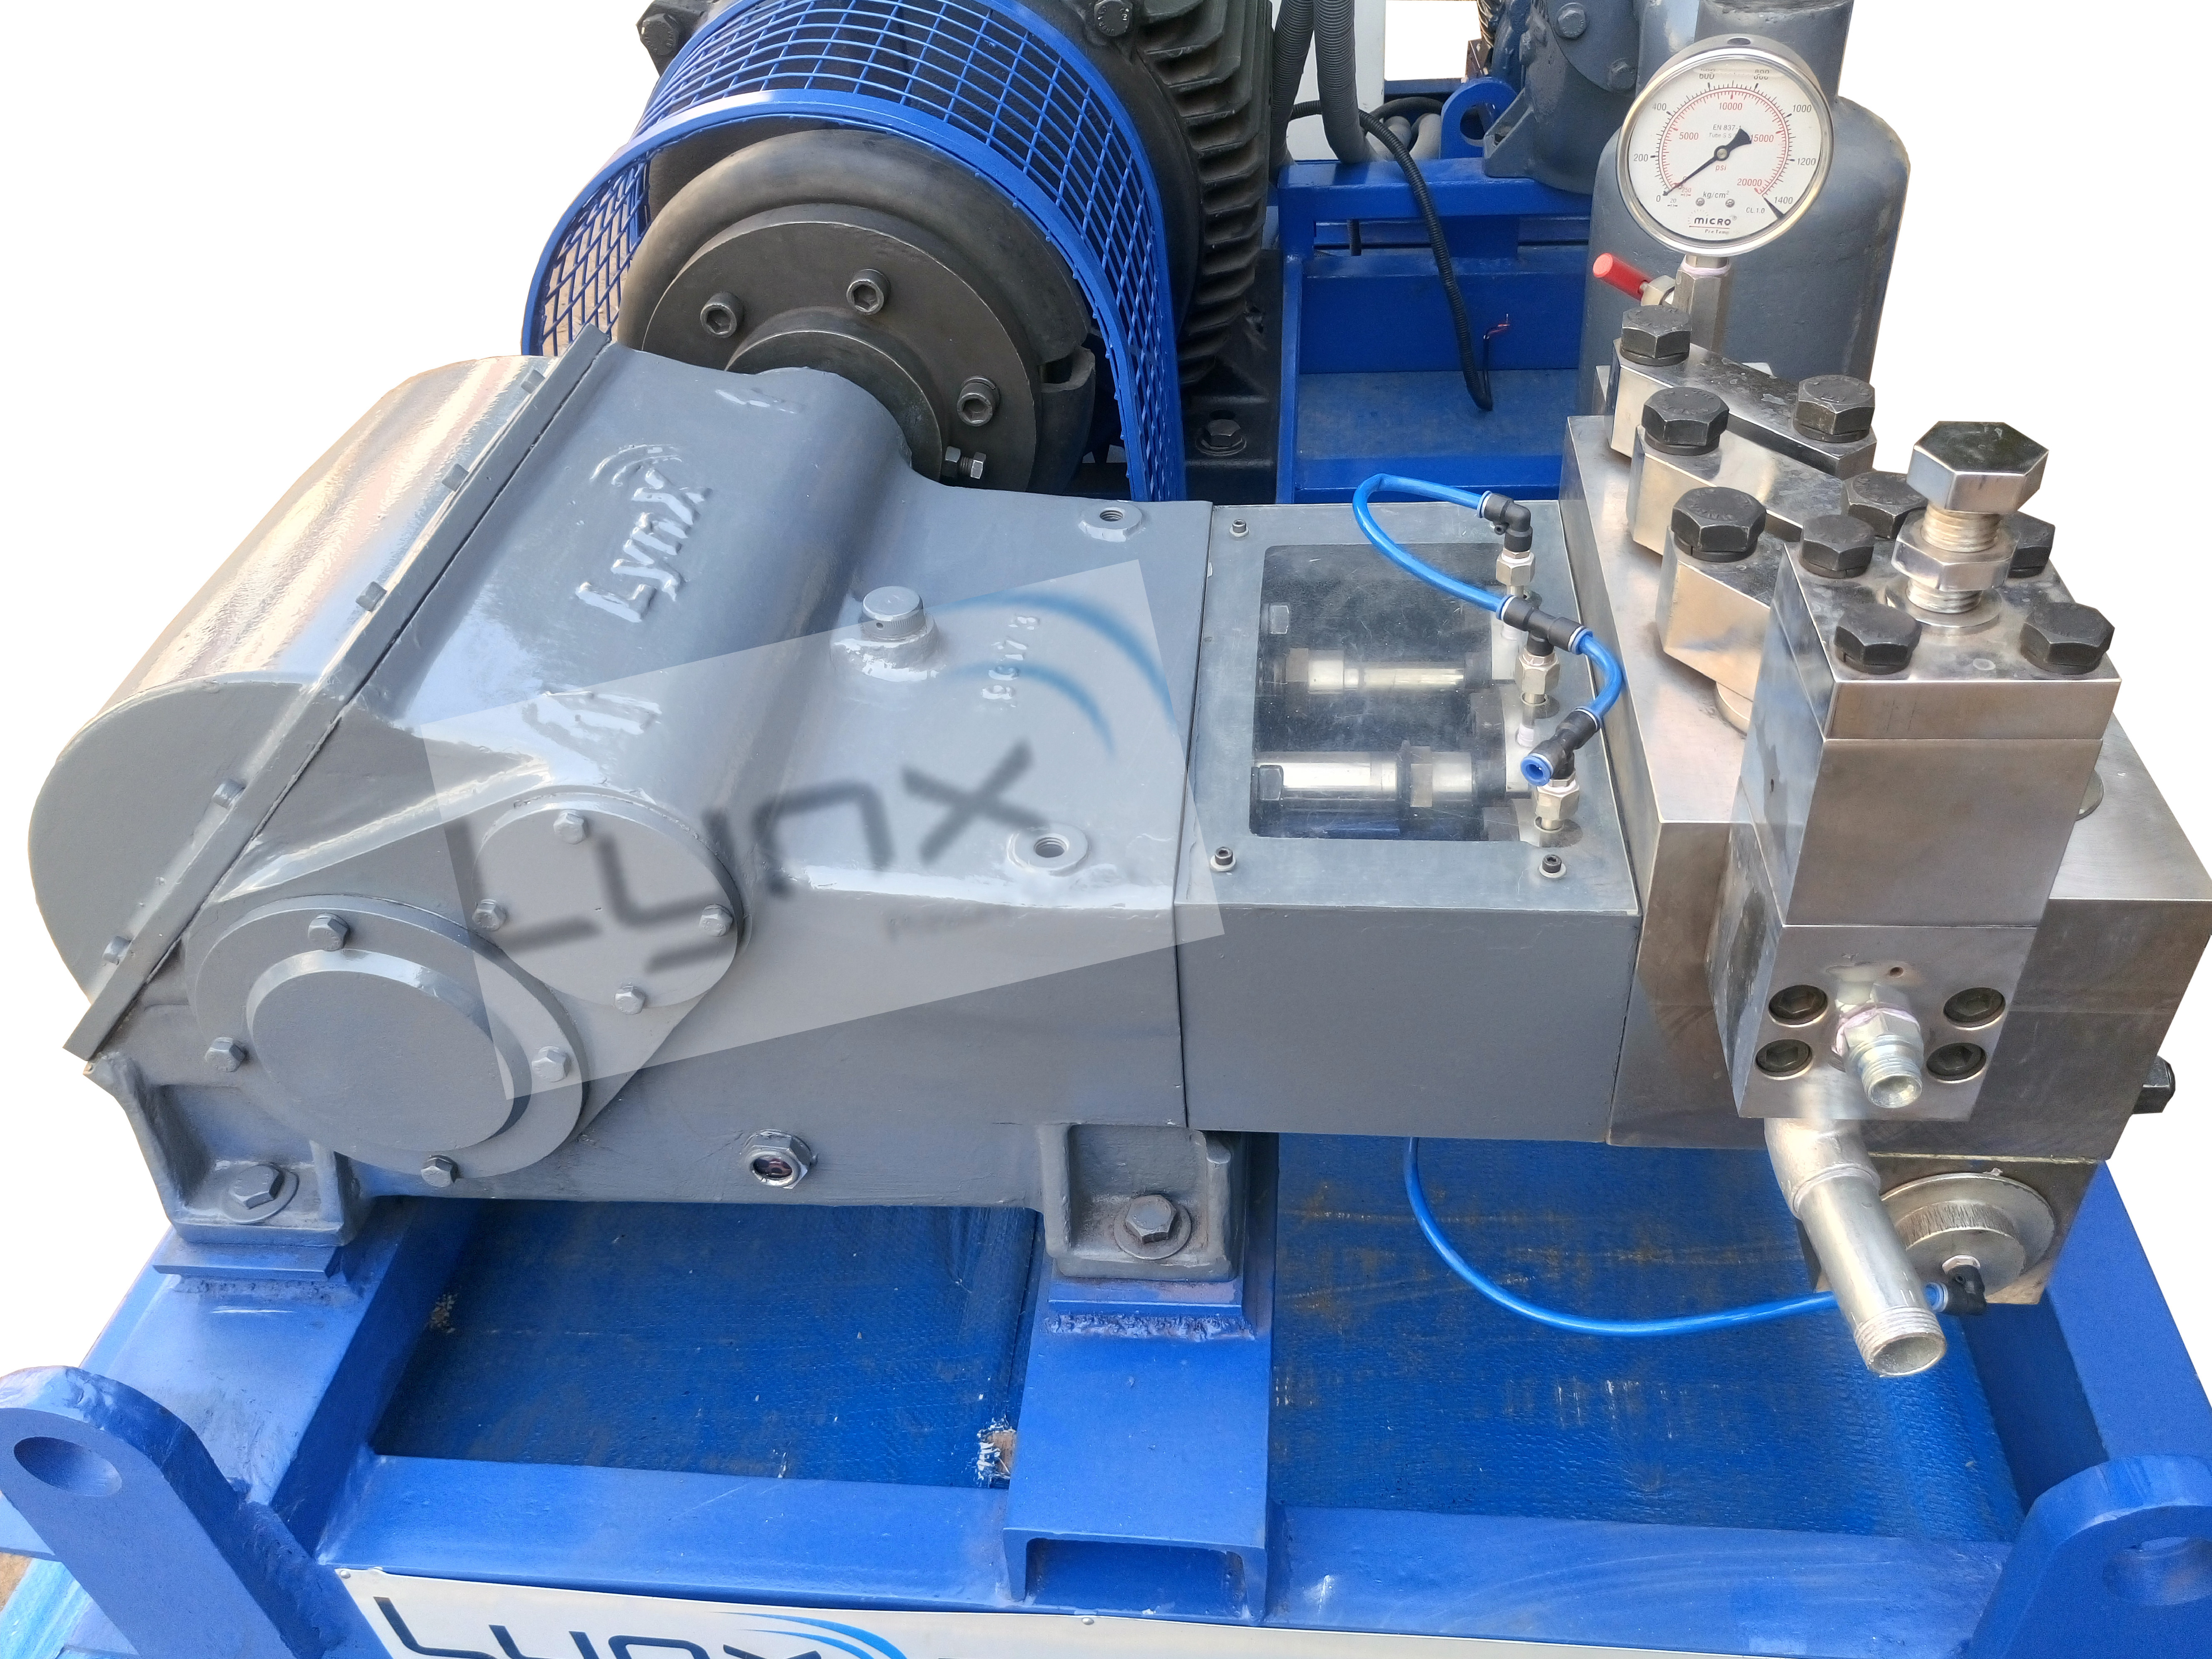 Hydro Pressure Testing Machine & Equipment